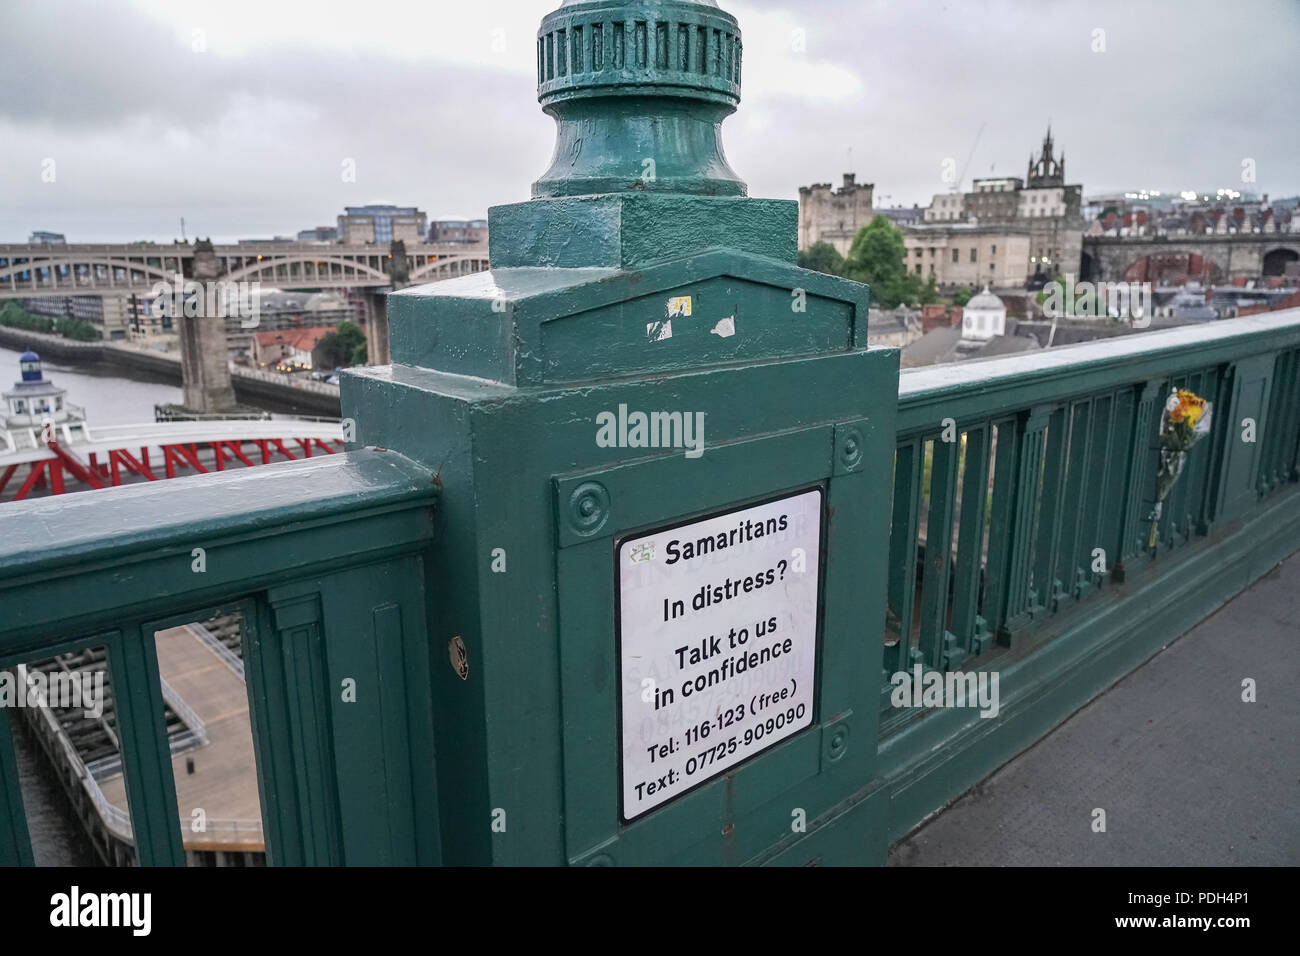 Fleurs commémorative à côté d'un panneau pour les Samaritains sur un pont de la ville de Newcastle, au Royaume-Uni. Date de la photo : le lundi 11 juin 2018. Photo : Roger Garf Banque D'Images